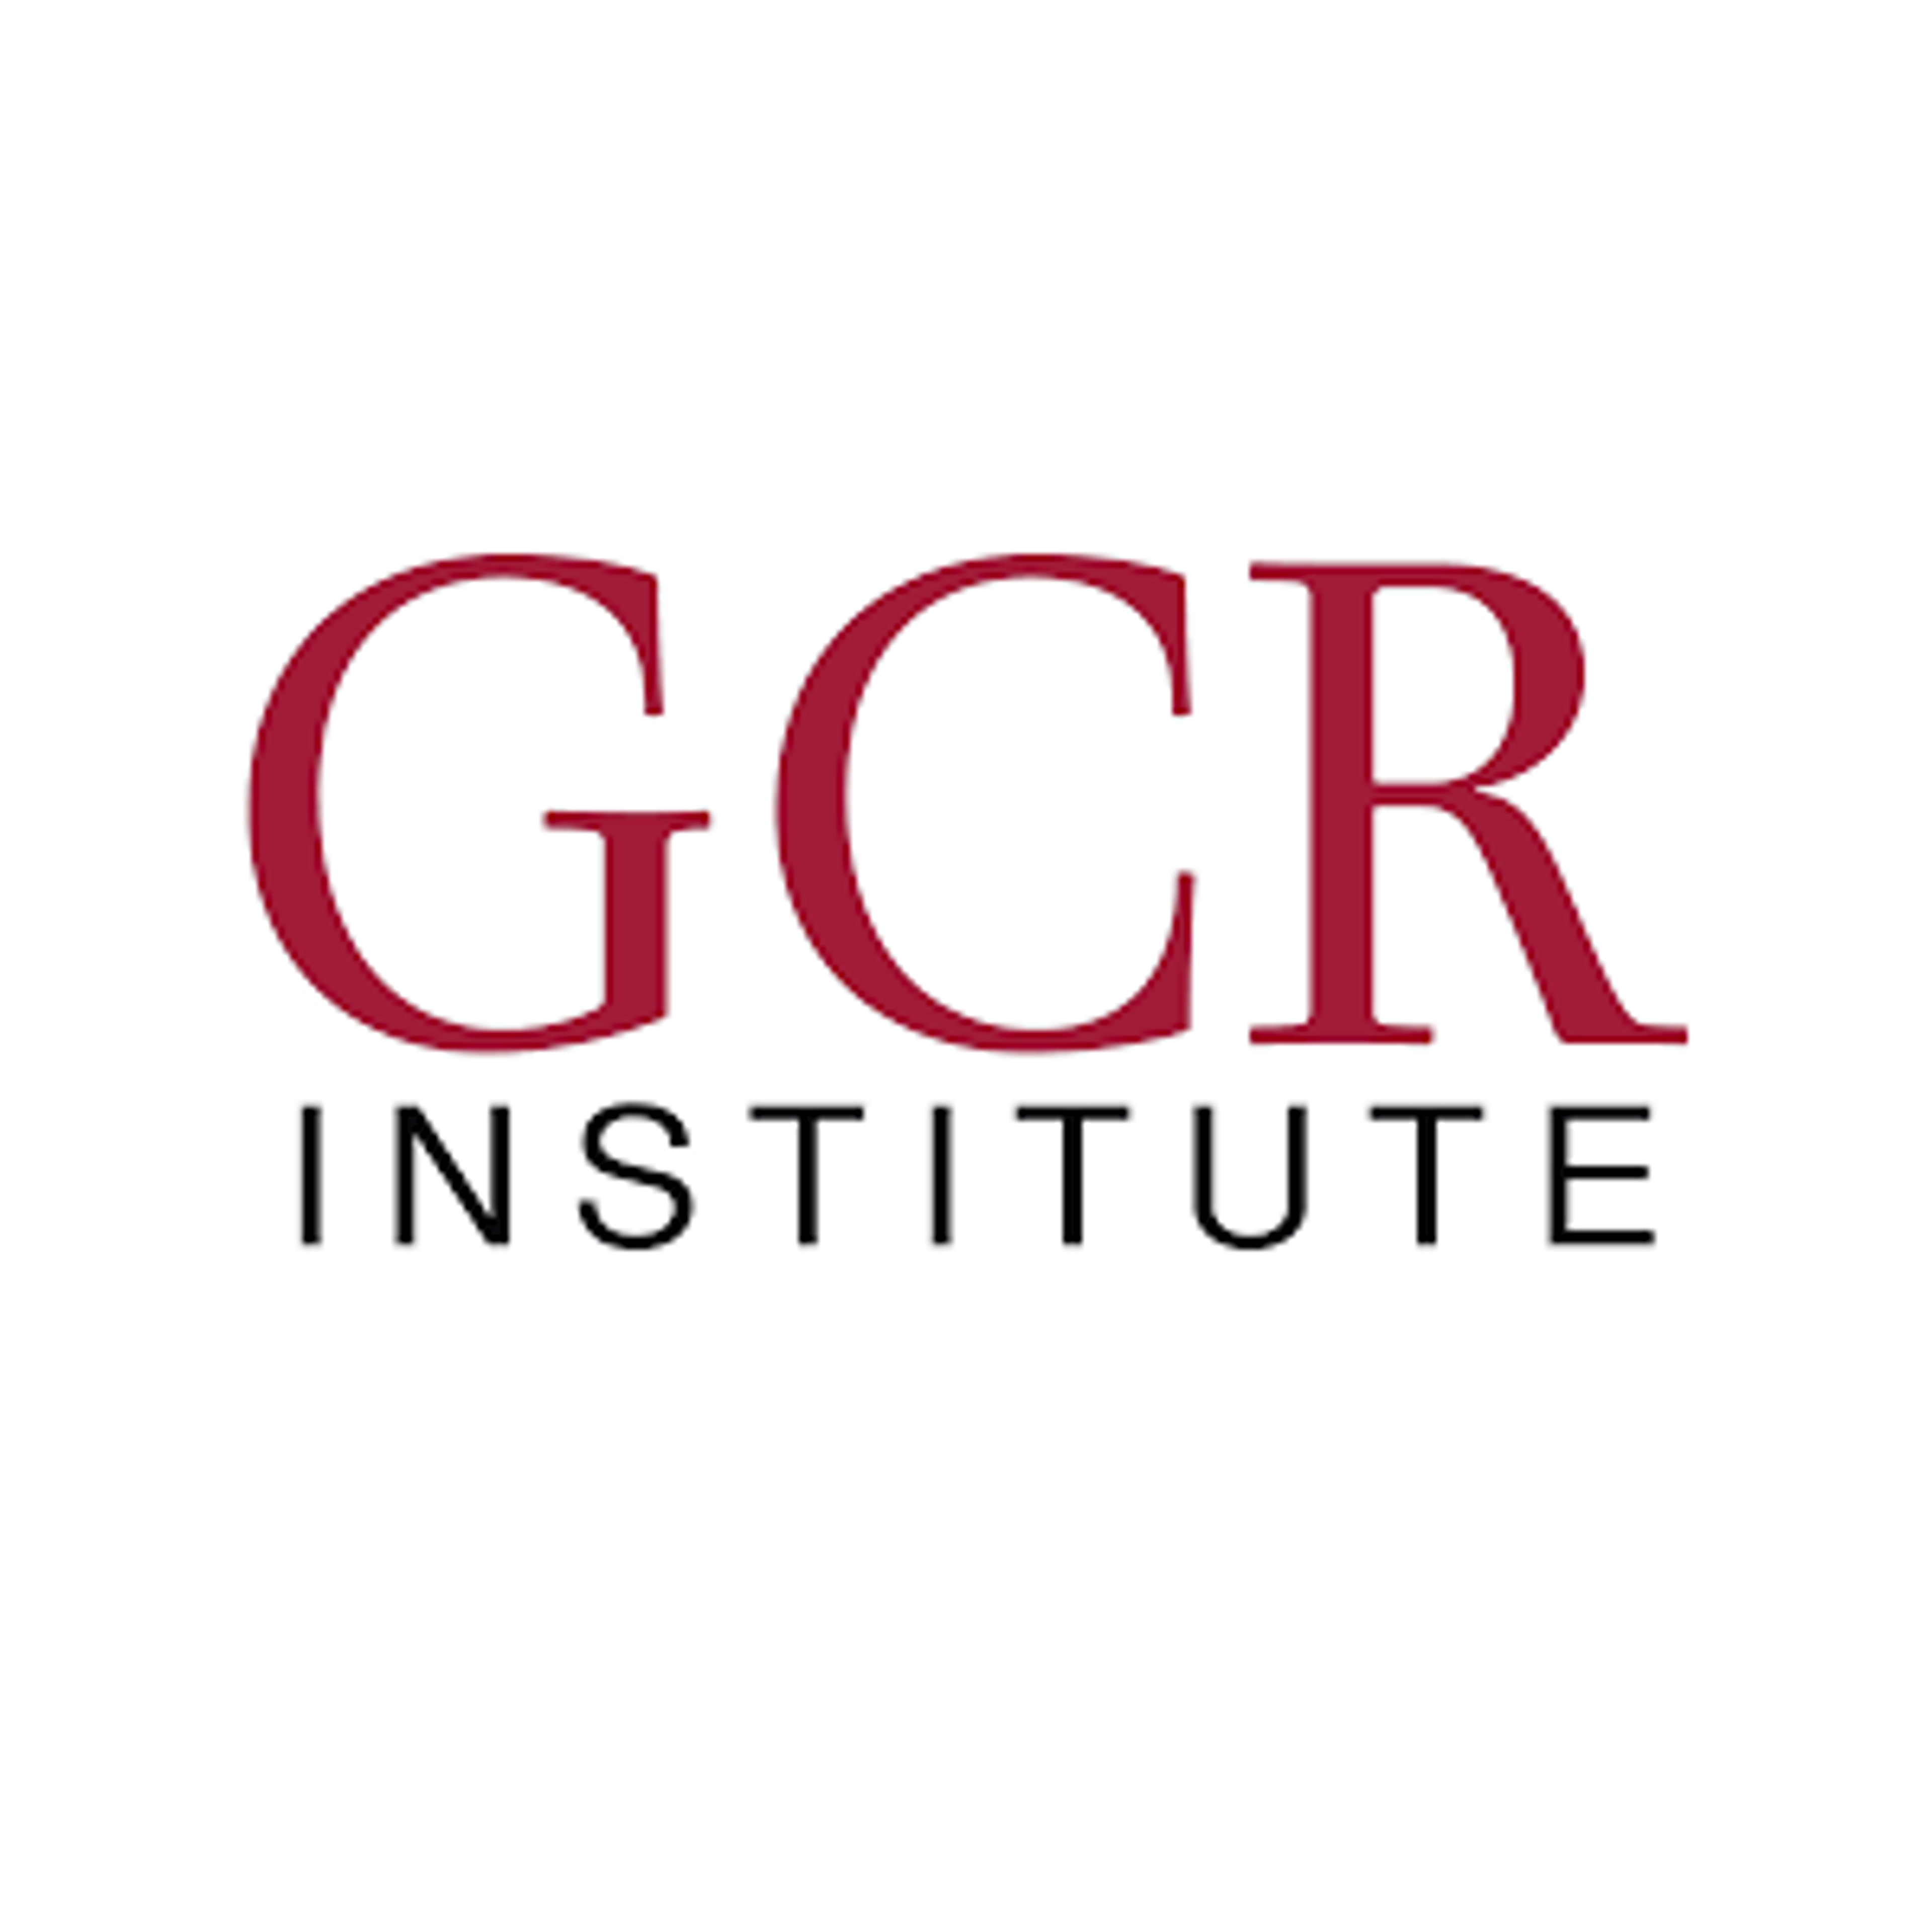 Global Catastrophic Risk Institute